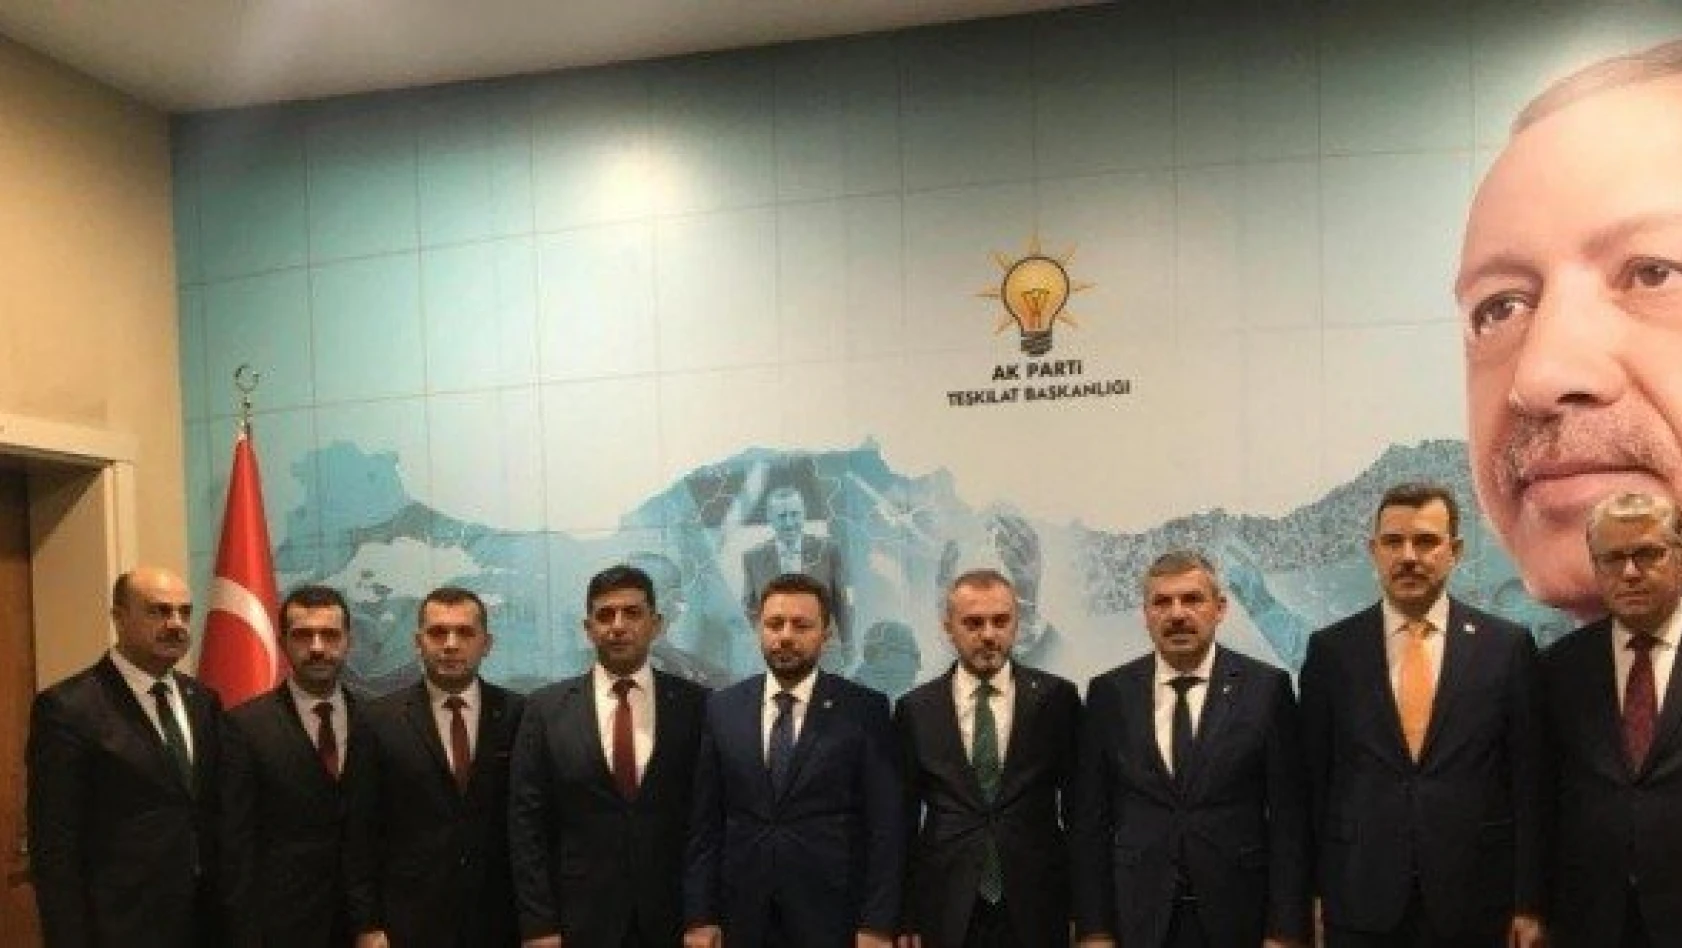 AK Parti Tosya İlçe Başkanı Mustafa Corcor oldu